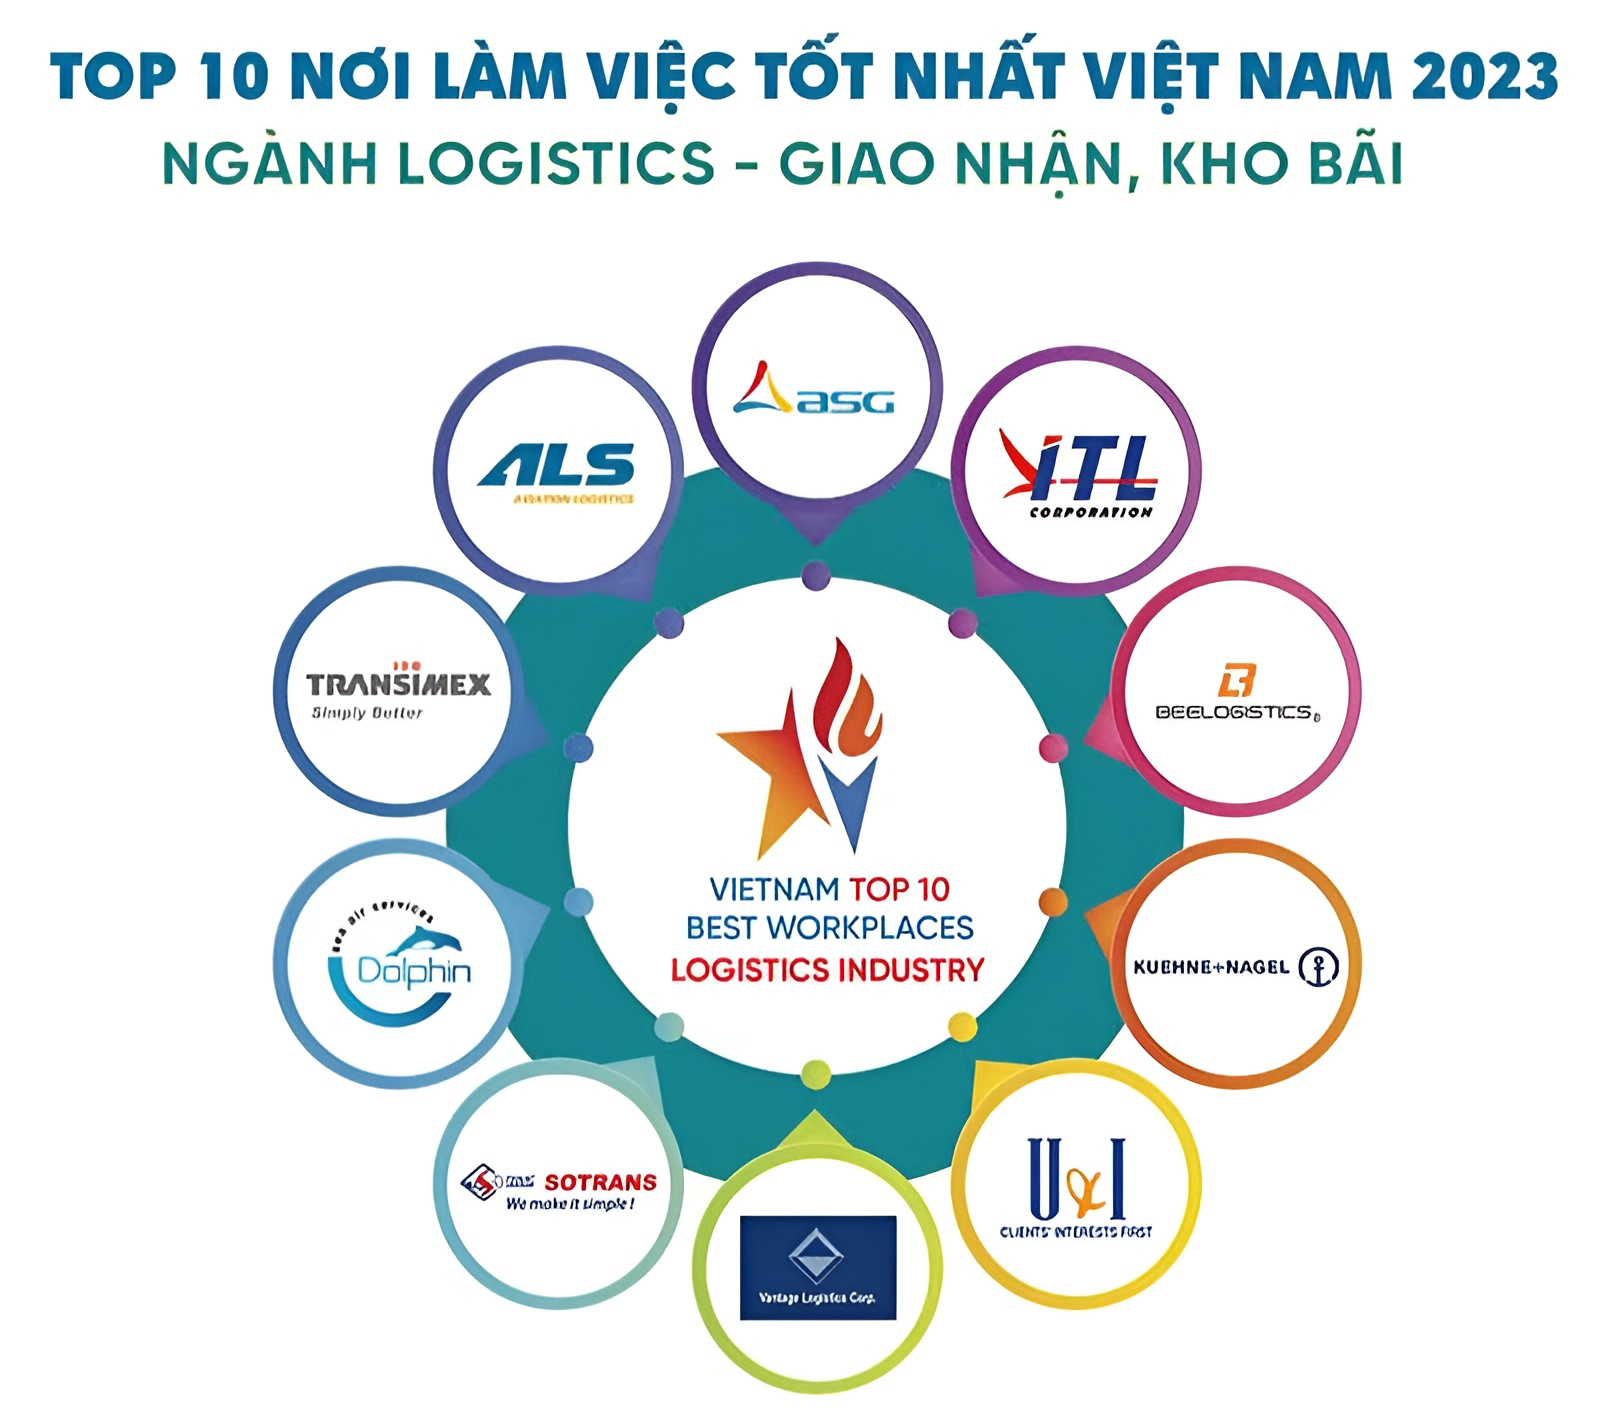 Top 10 nơi làm việc tốt nhất Việt Nam ngành Logistics - Giao nhận, kho bãi